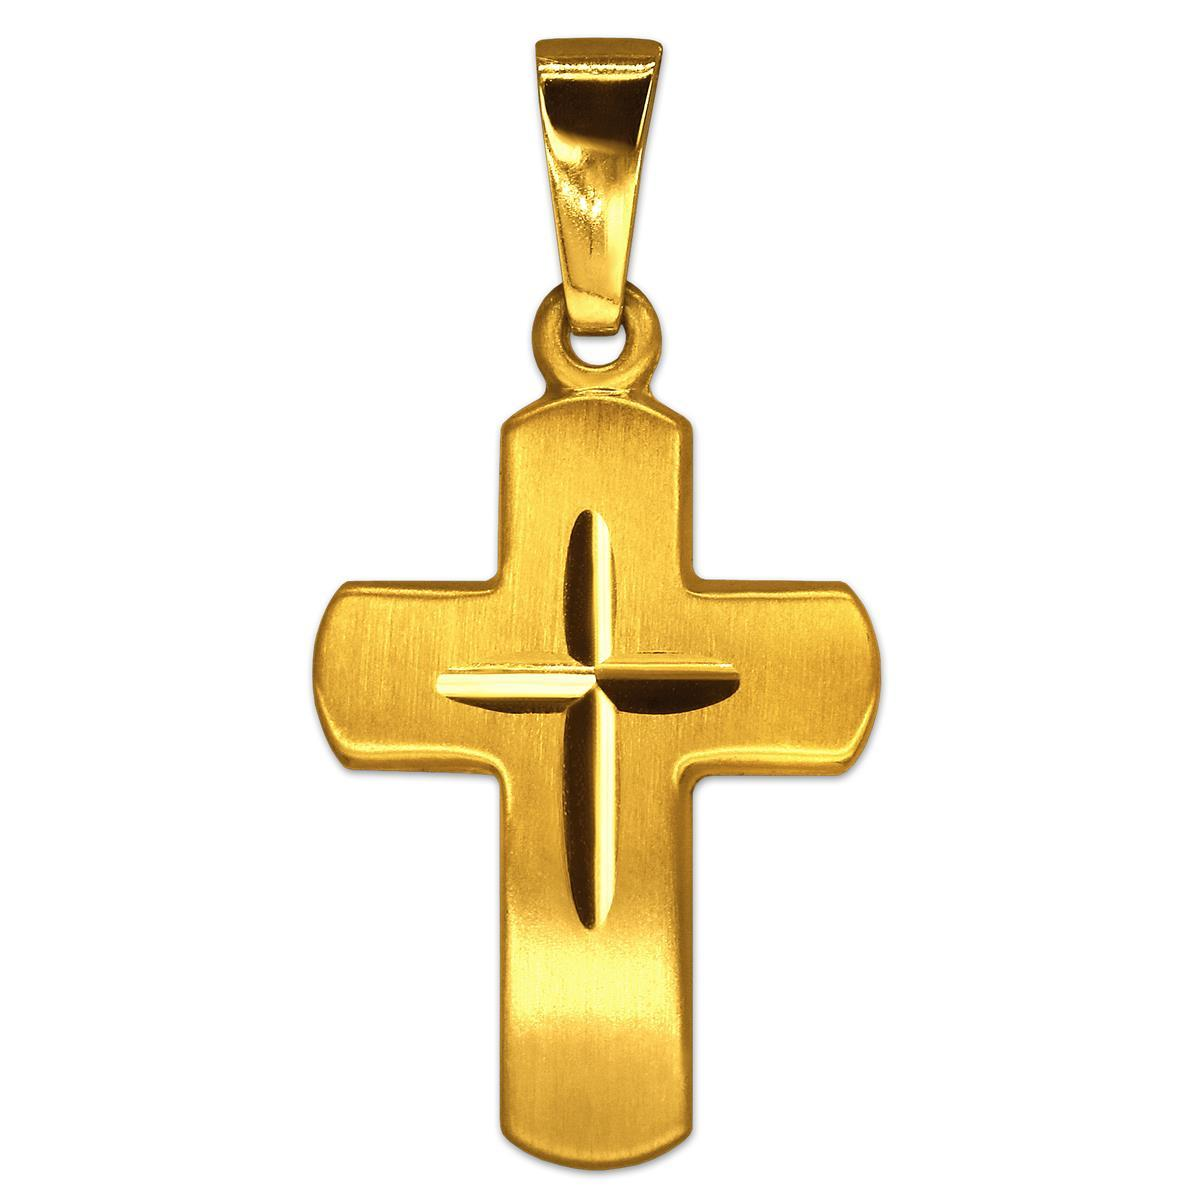 Goldener Anhänger kleines Kreuz 18 mm seidenmatt, breite Balken mit Innenkreuz diamantiert 333 GOLD 8 KARAT